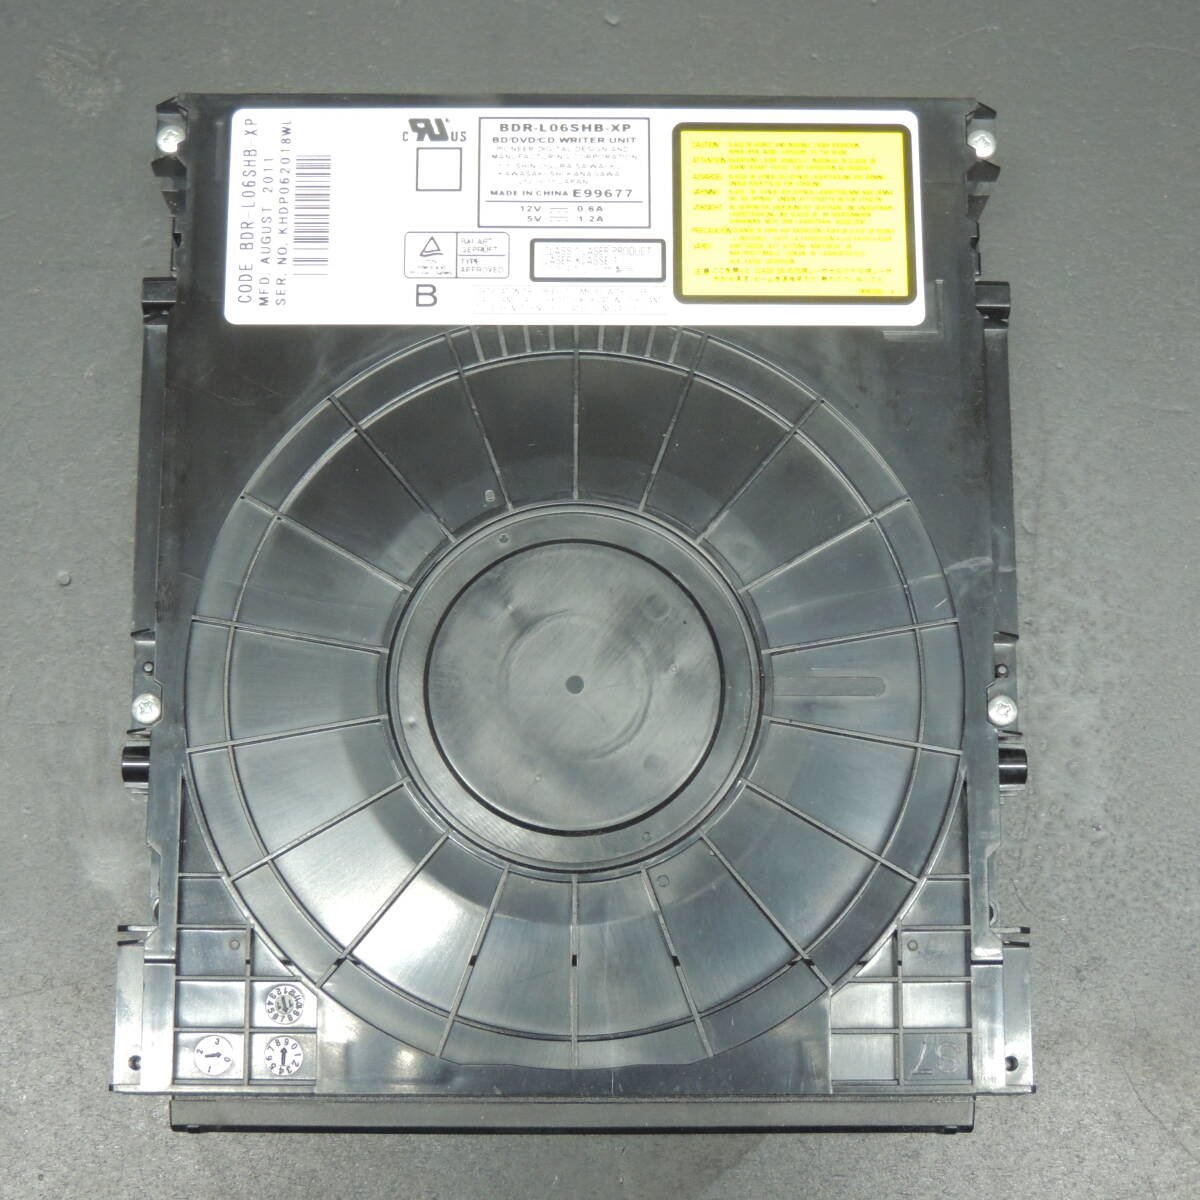 【ダビング/再生確認済み】SHARP シャープ Blu－rayドライブ BDR-L06SHB-XP 換装用/交換用 管理:ケ-45の画像1